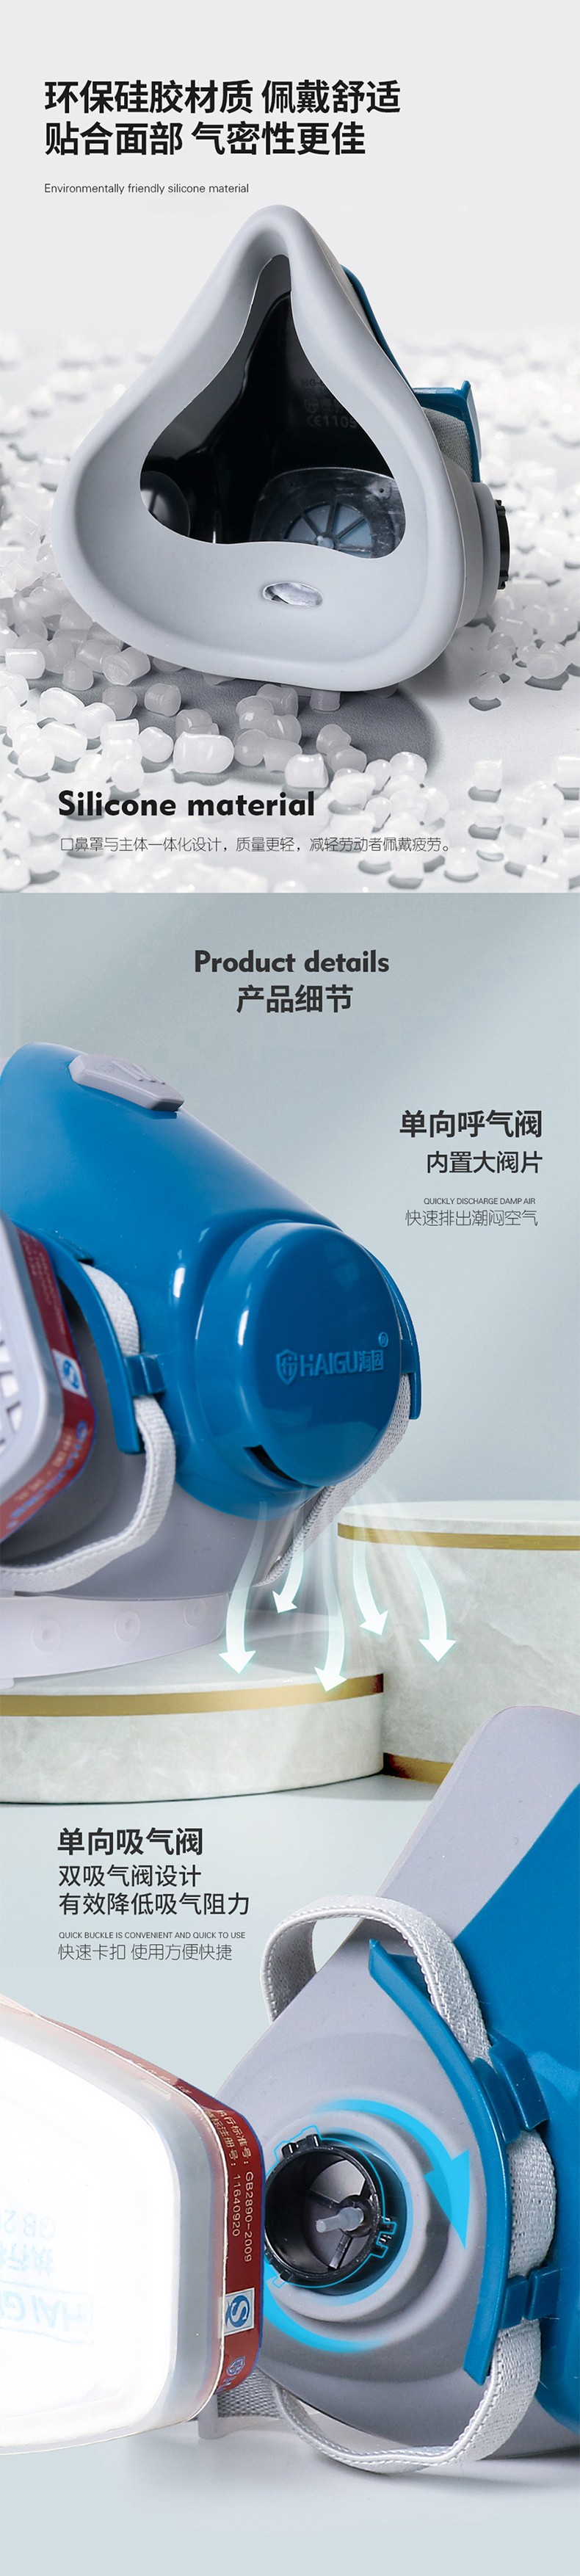 海固HG-601半面罩防毒面具图片2